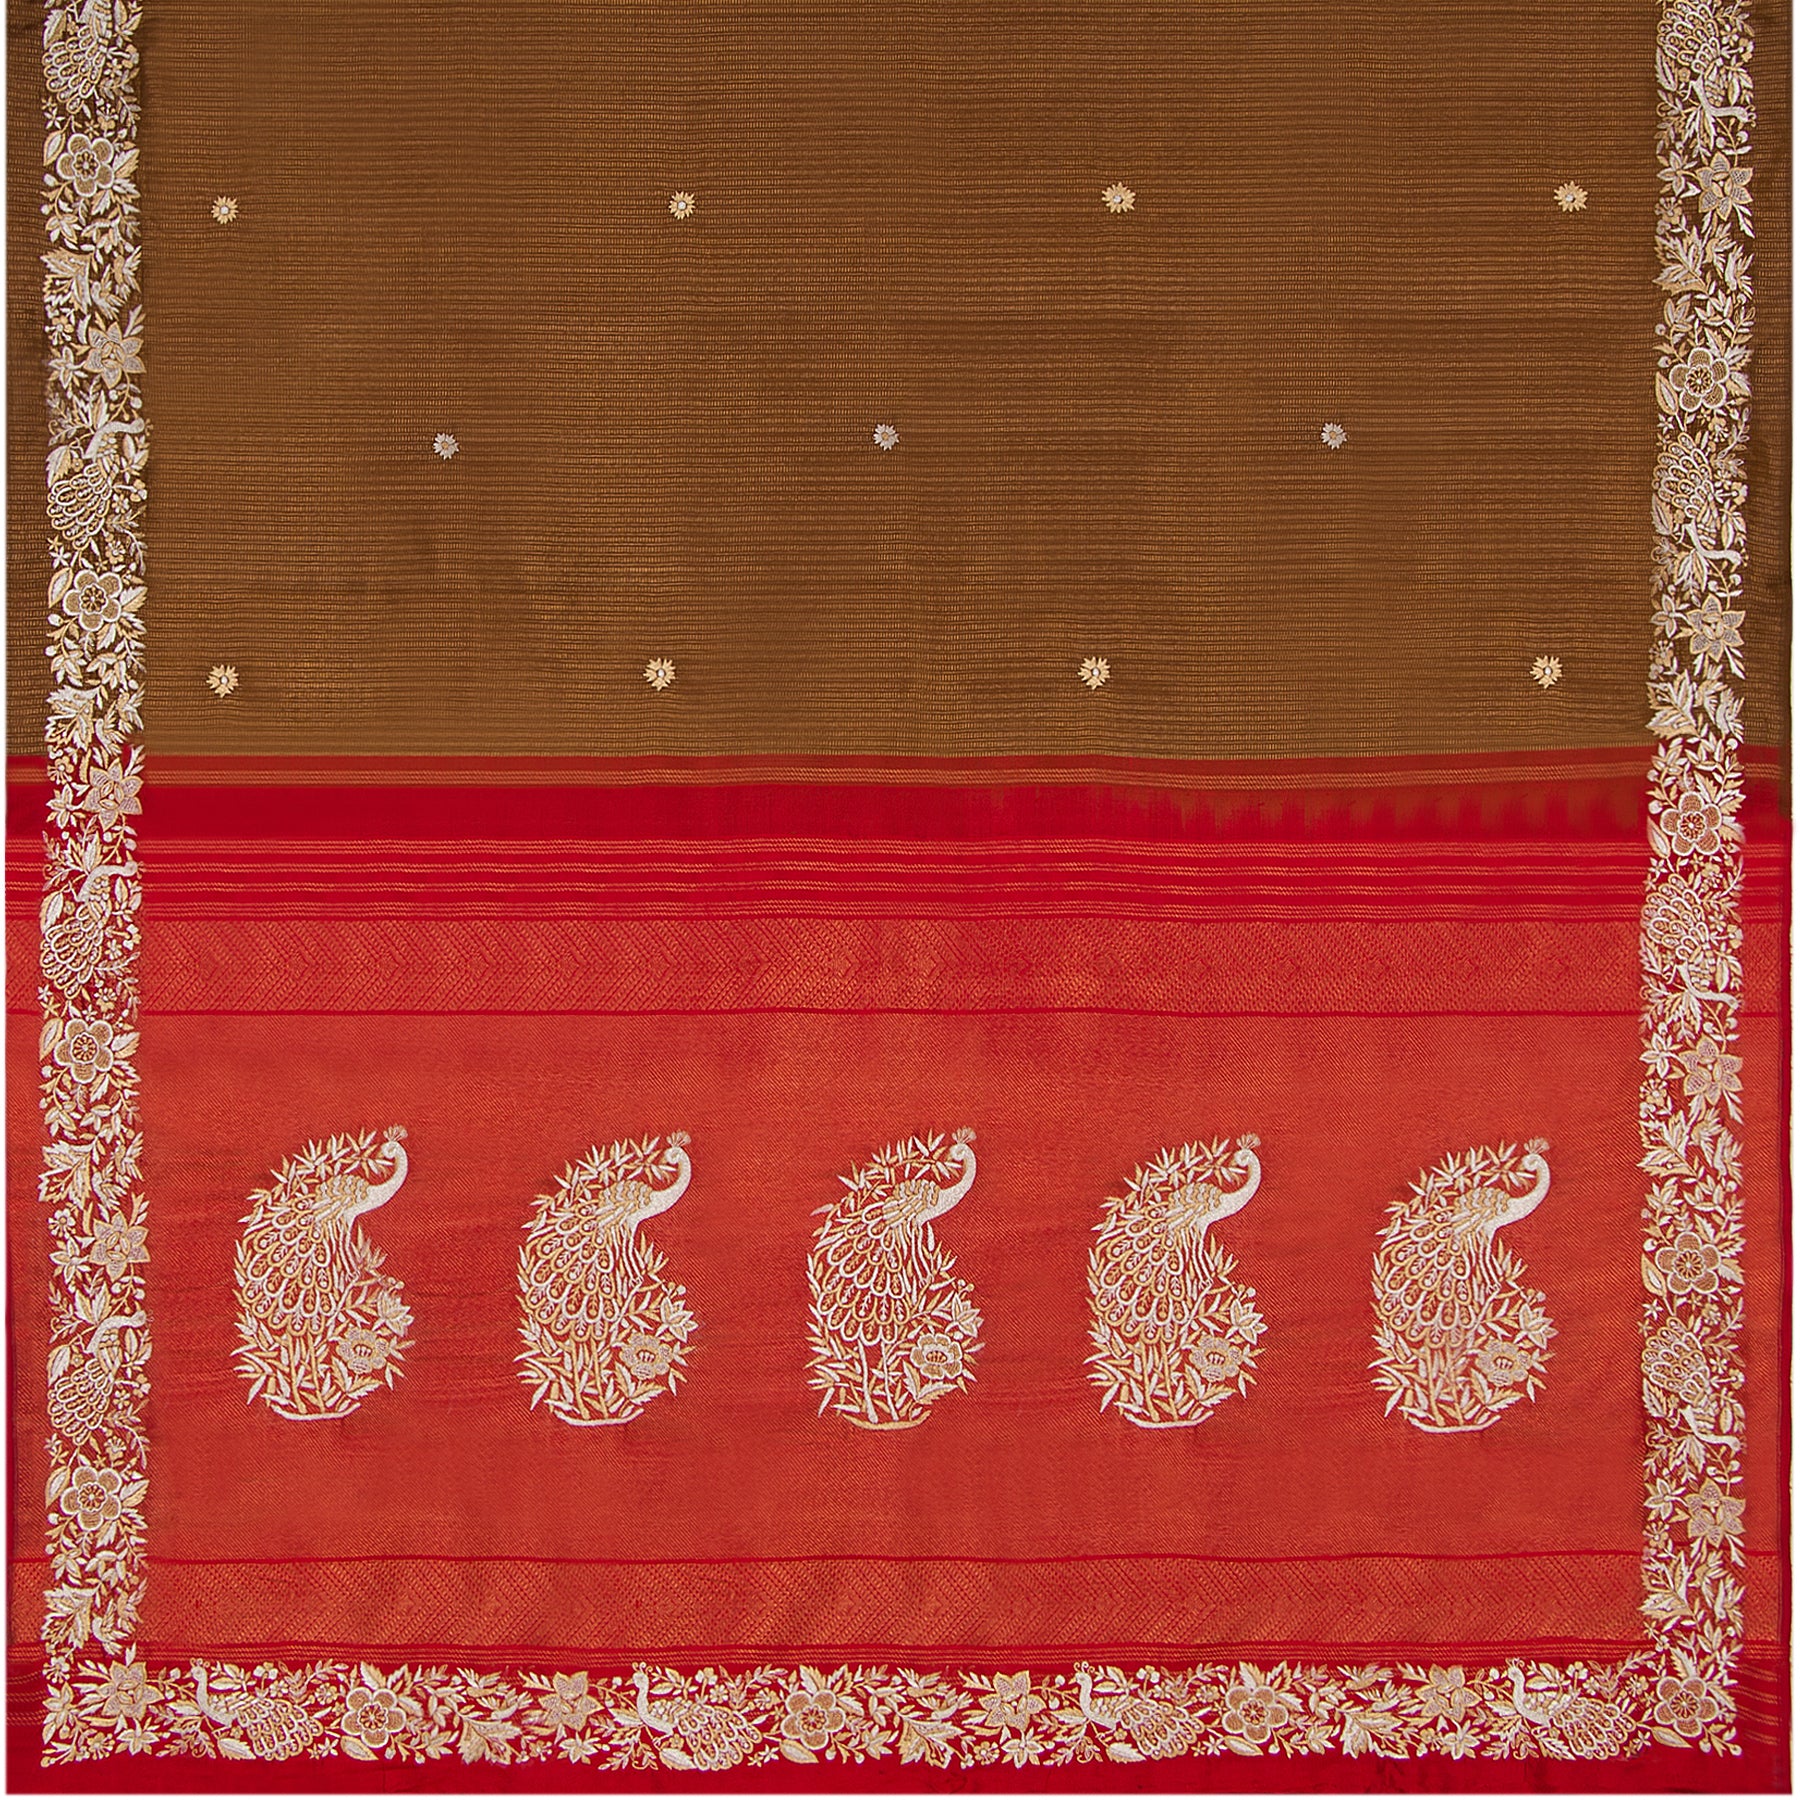 Kanakavalli X Ashdeen Kanjivaram Silk Sari 21-120-HS001-00385 - Full View